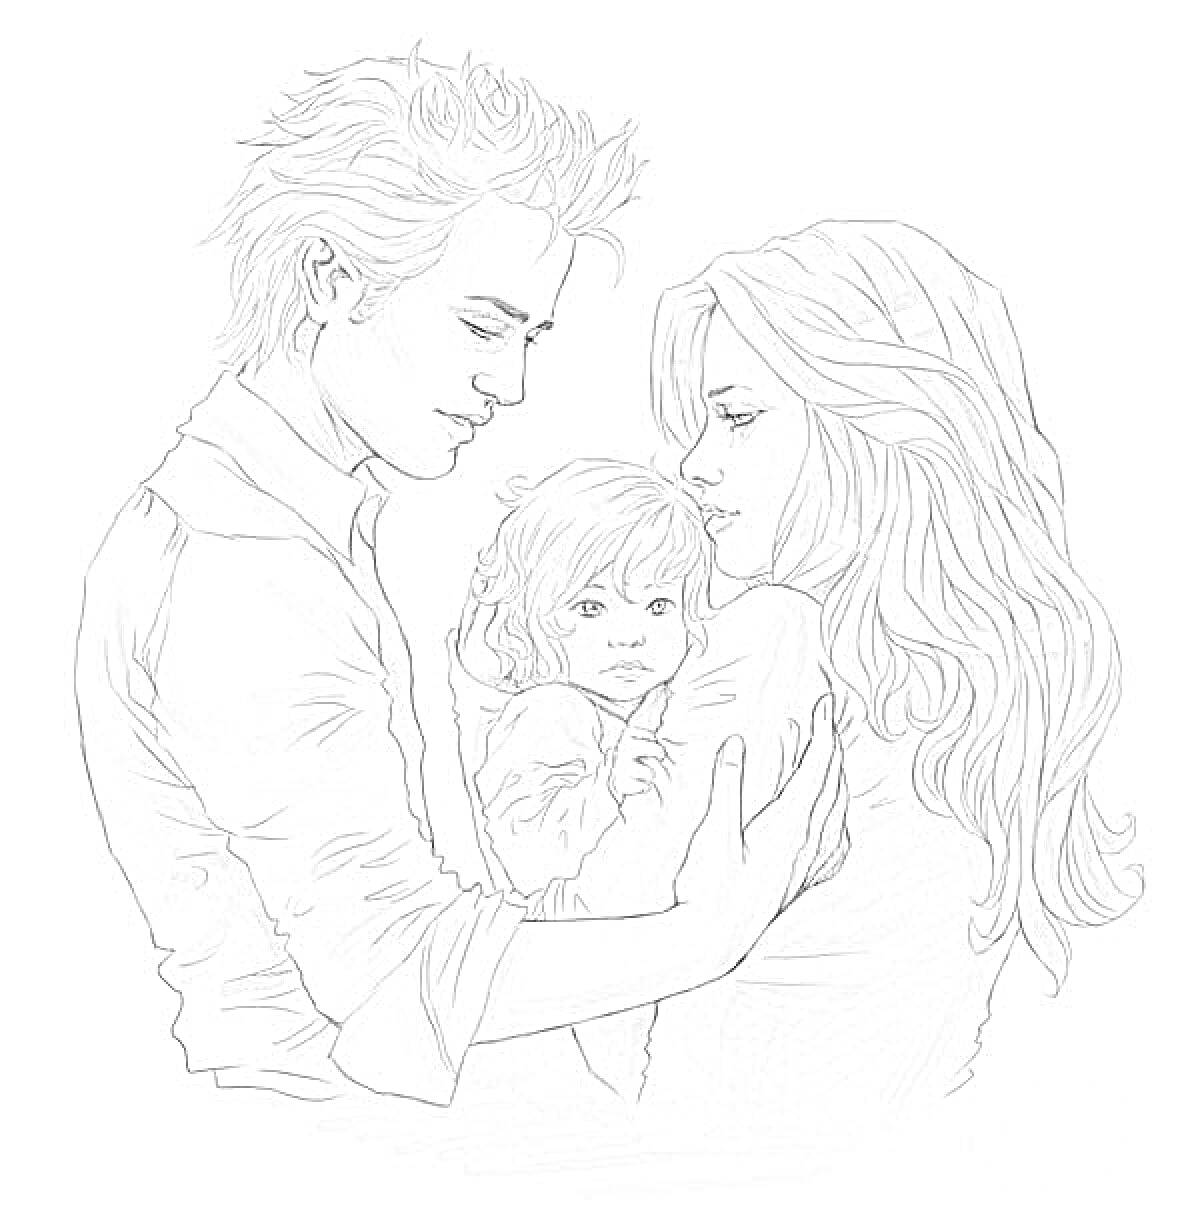 Семья с маленьким ребенком на руках у женщины, рядом стоит мужчина с прической в стиле 